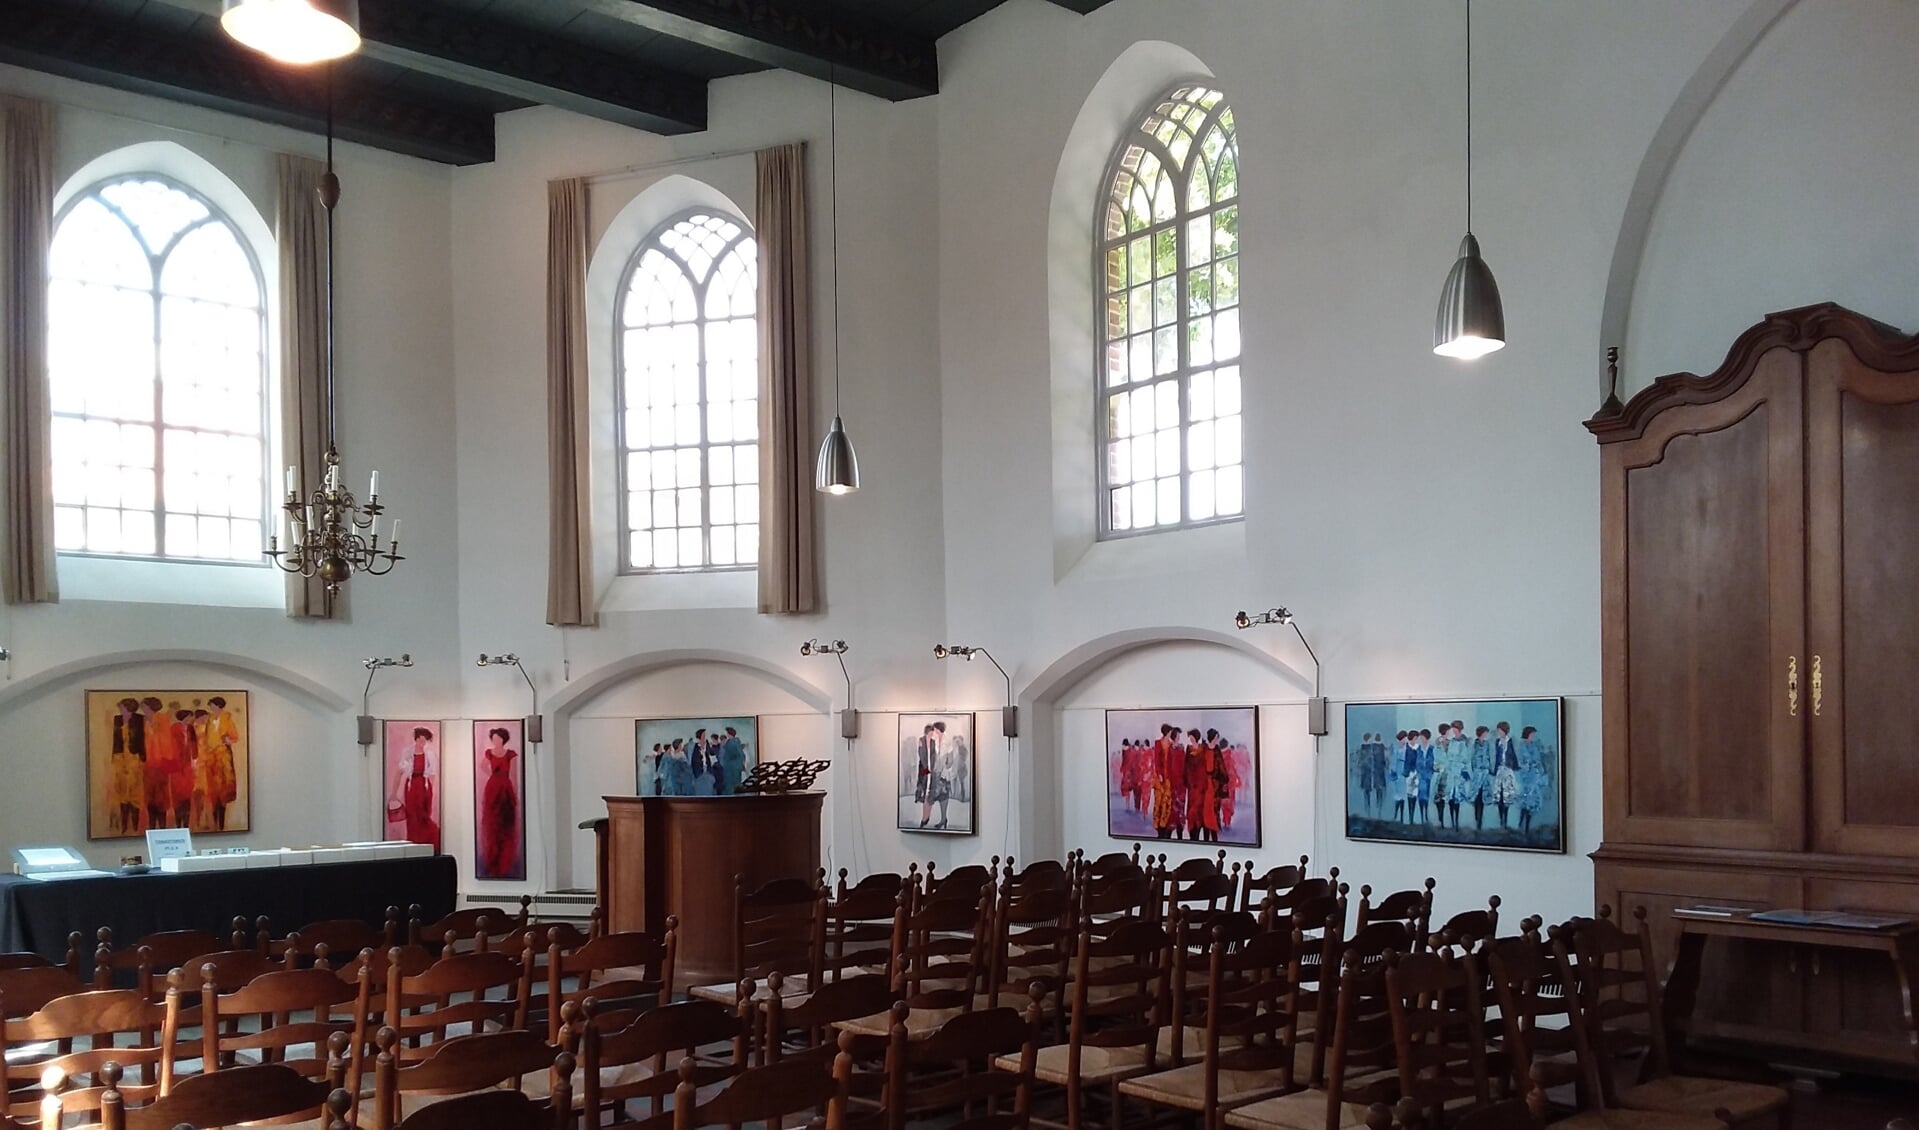 In de Kapel van Bronkhorst zullen weer exposities worden ingericht. Foto: Jaap Berenbak